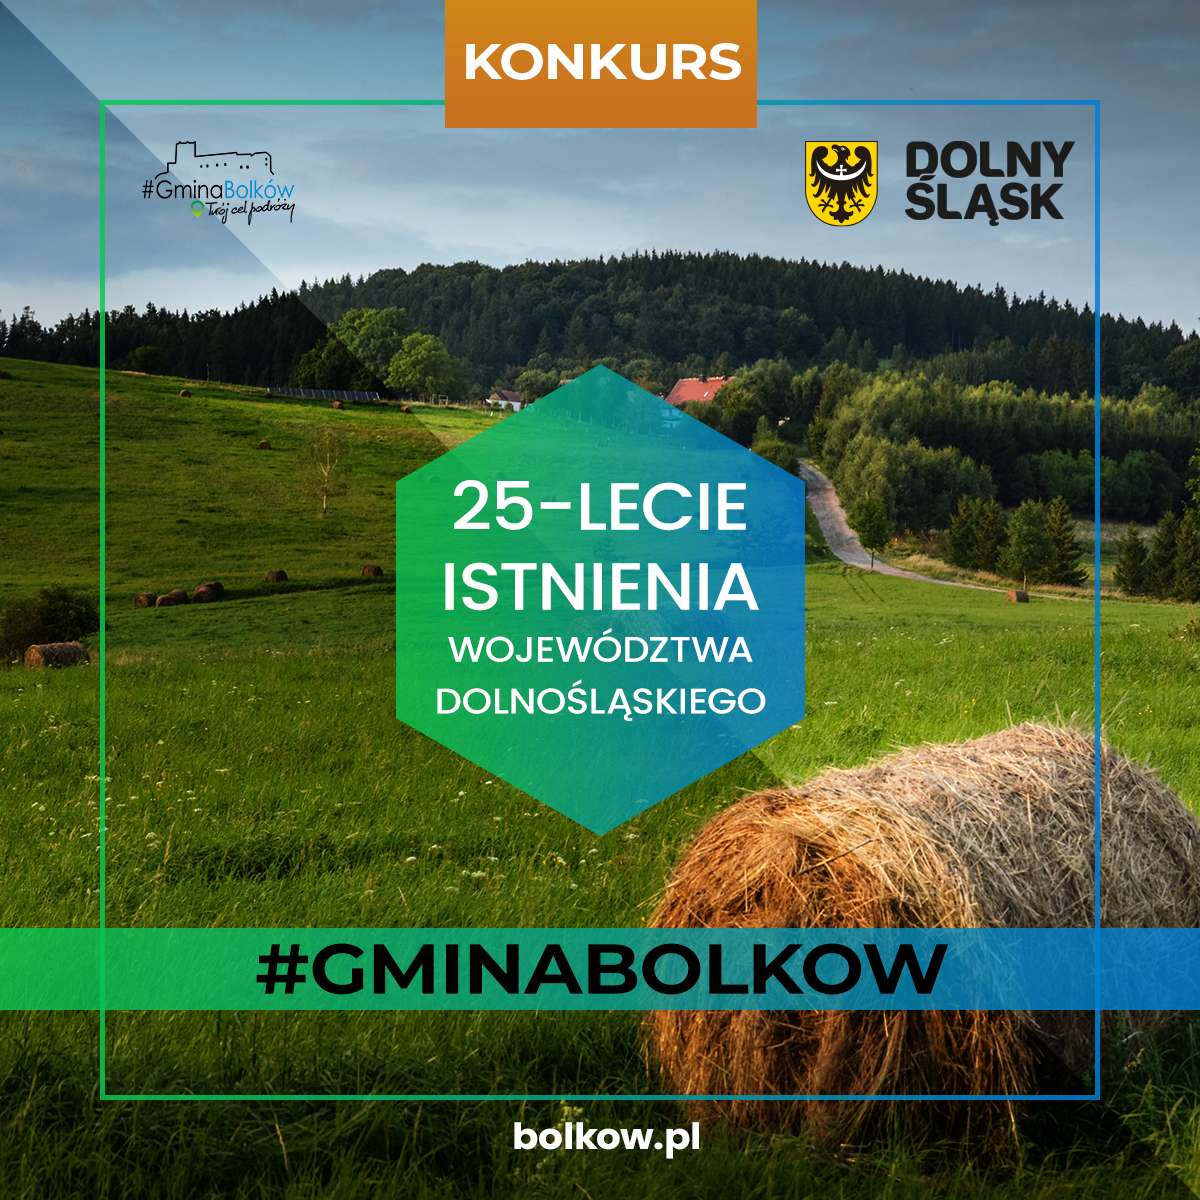 informacja nt konkursu na zdjęciu widać łąkę w Radzimowicach